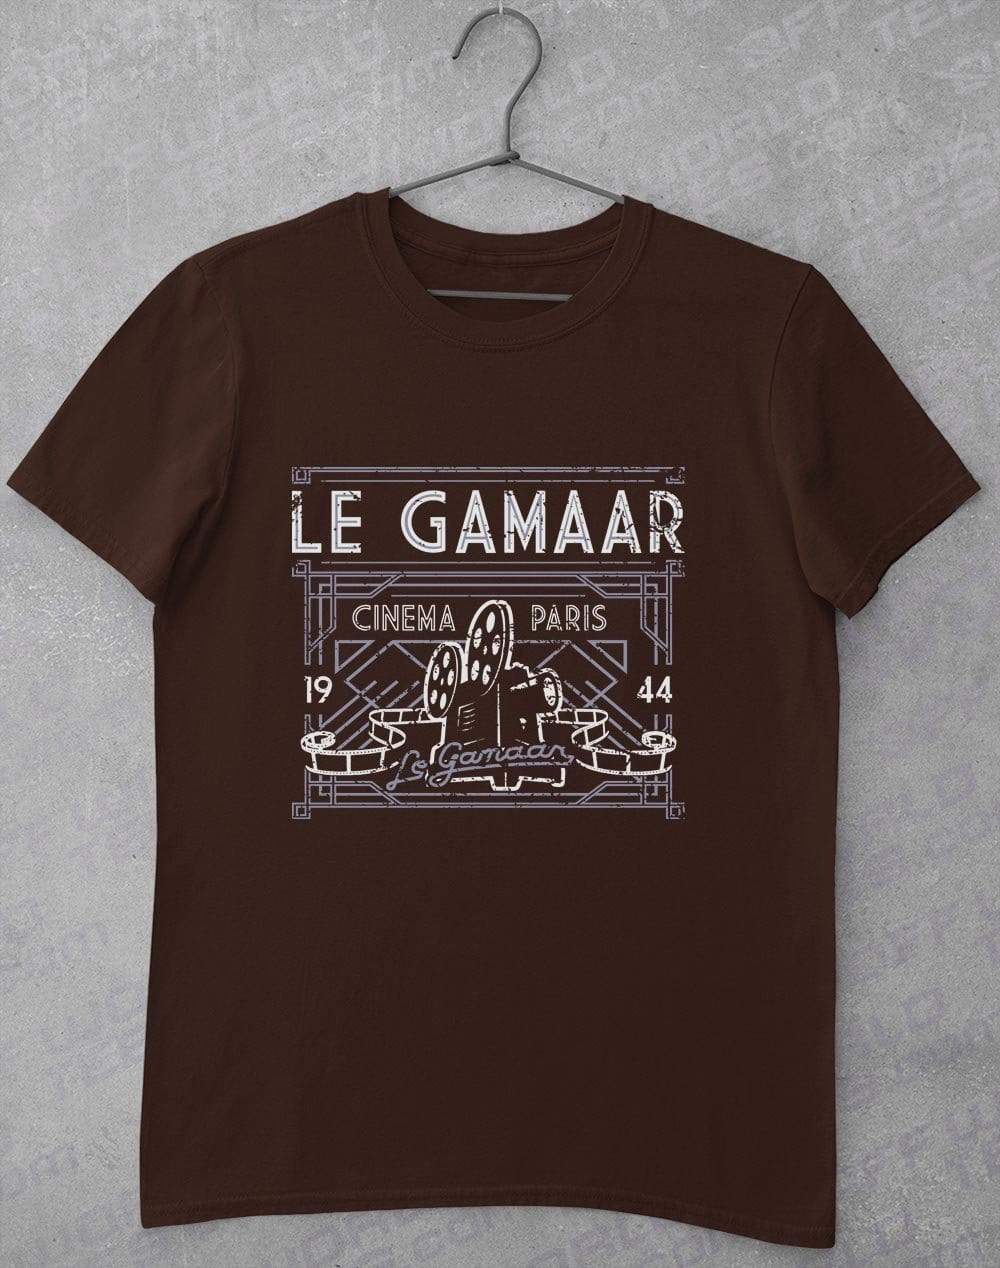 Le Gamaar Cinema T Shirt S / Dark Chocolate  - Off World Tees